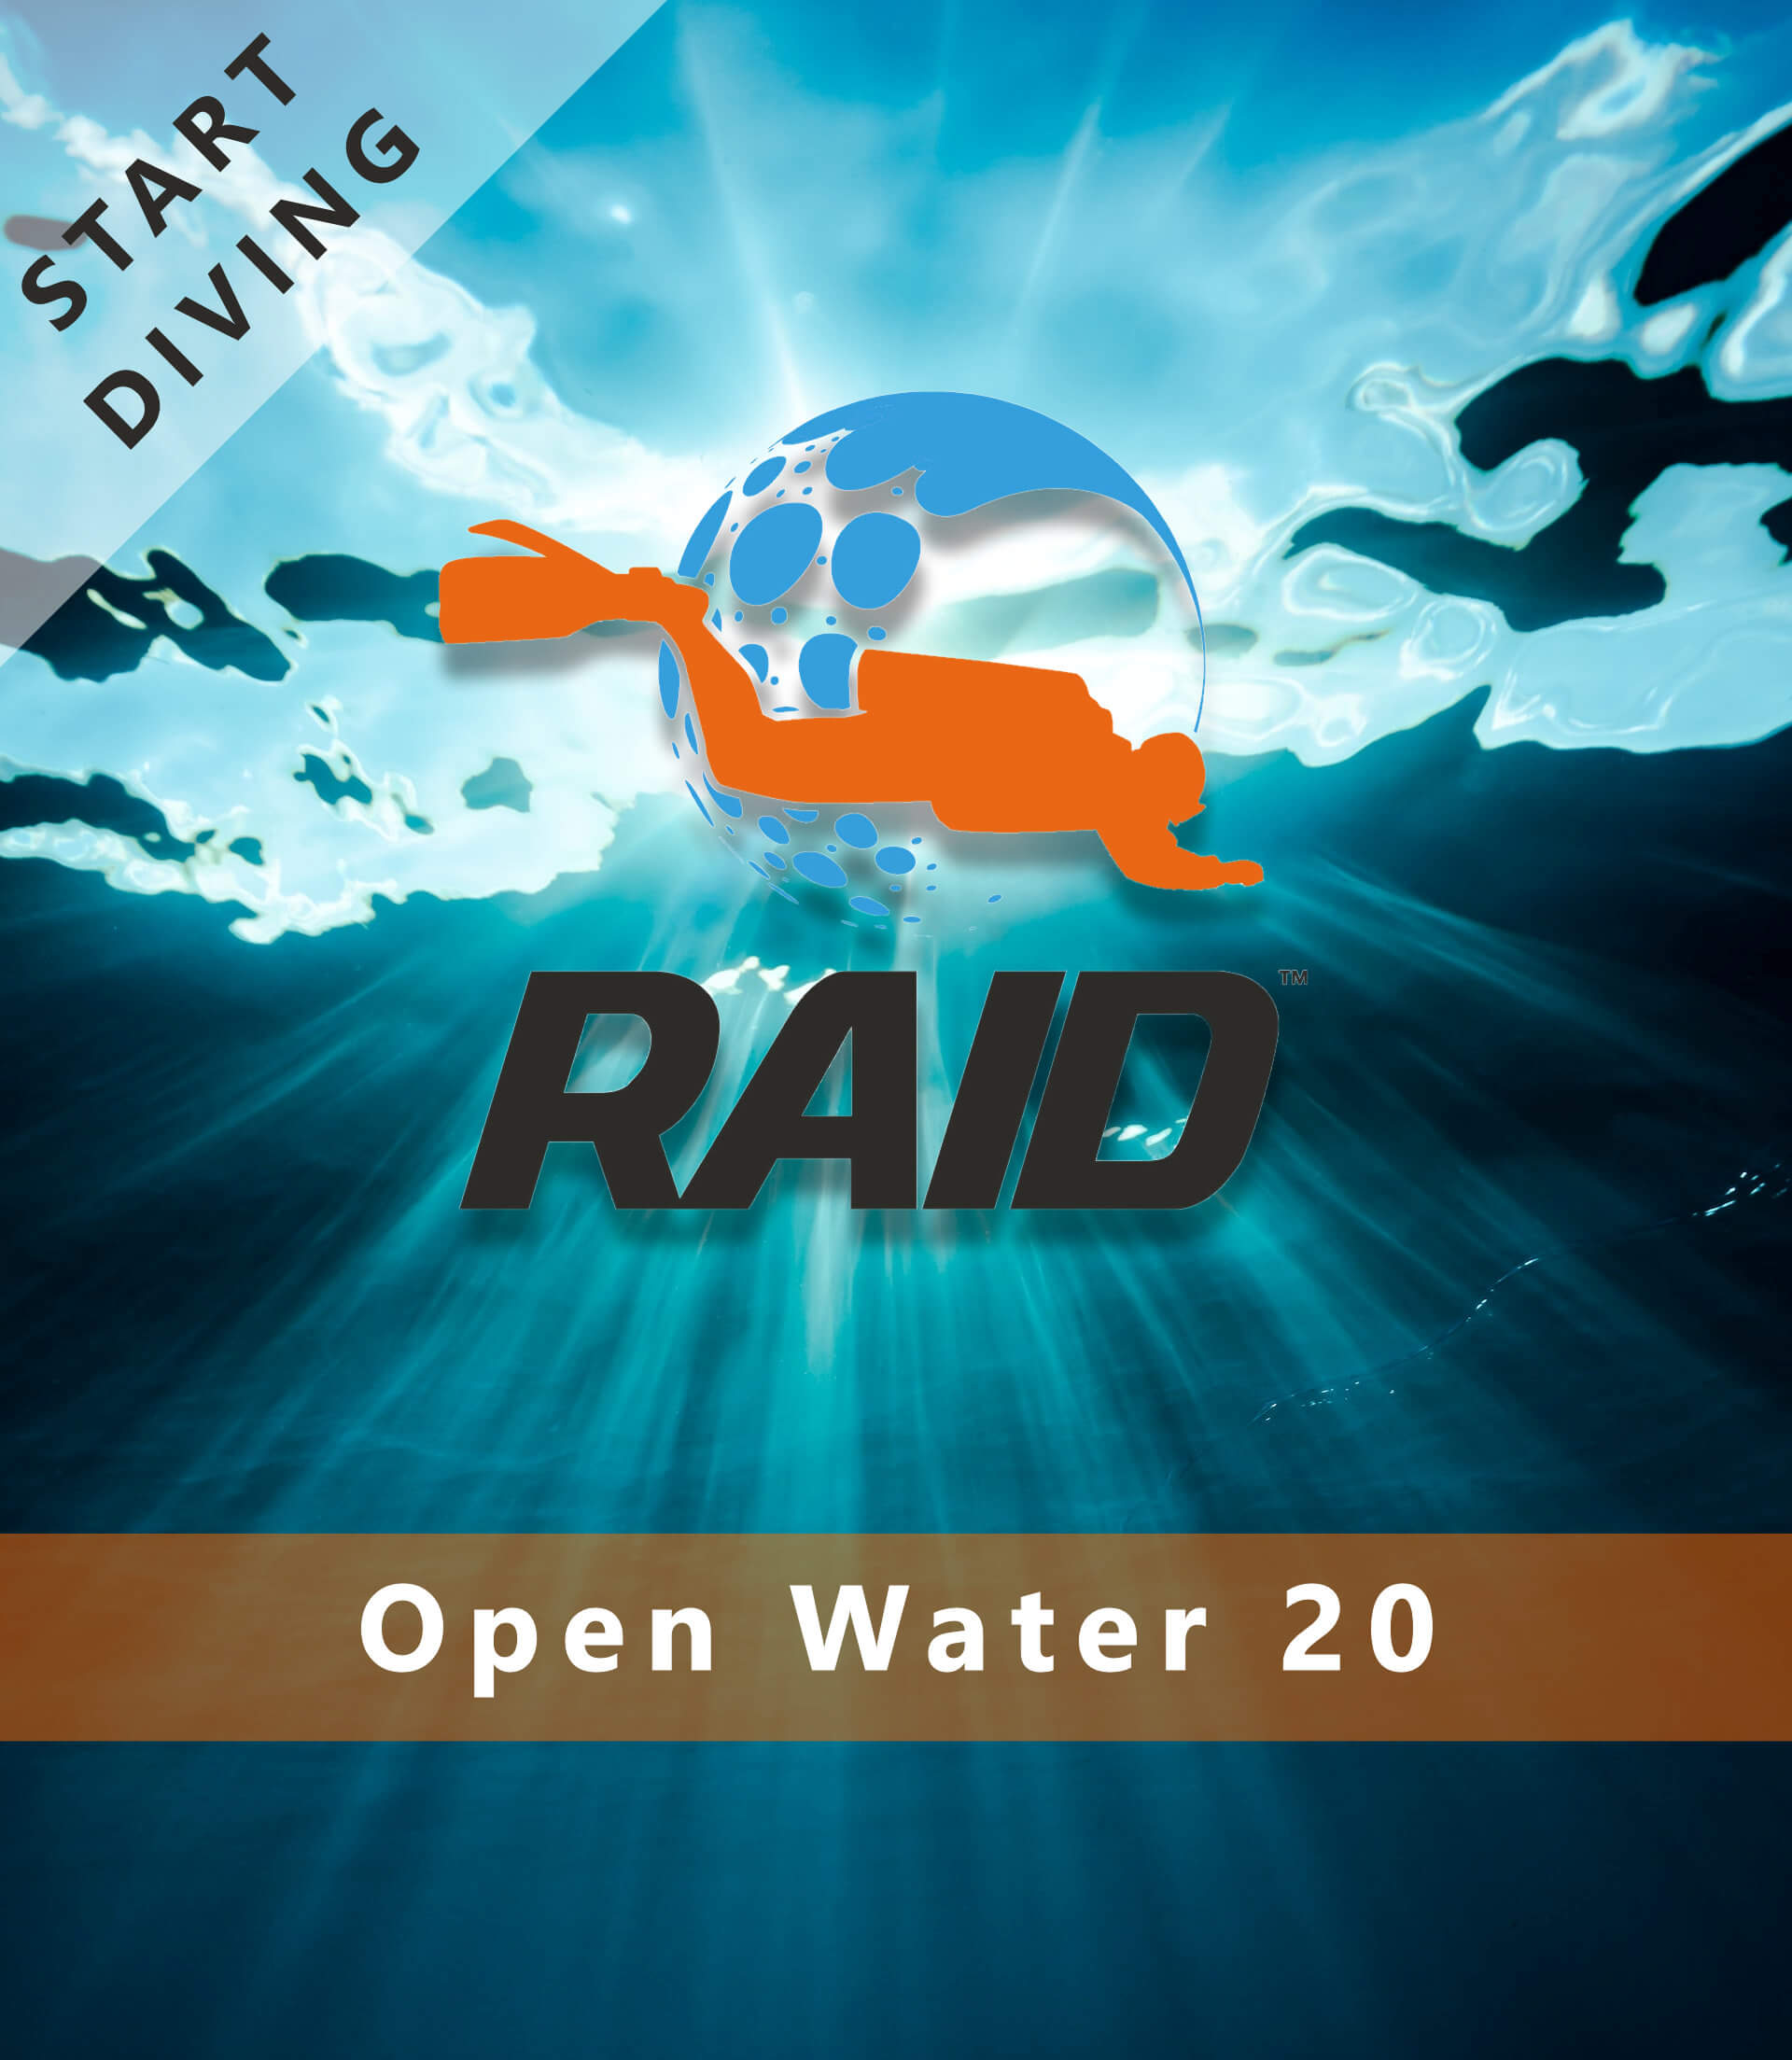 Start Diving / Open Water 20 - RAID International Scuba Diving Course